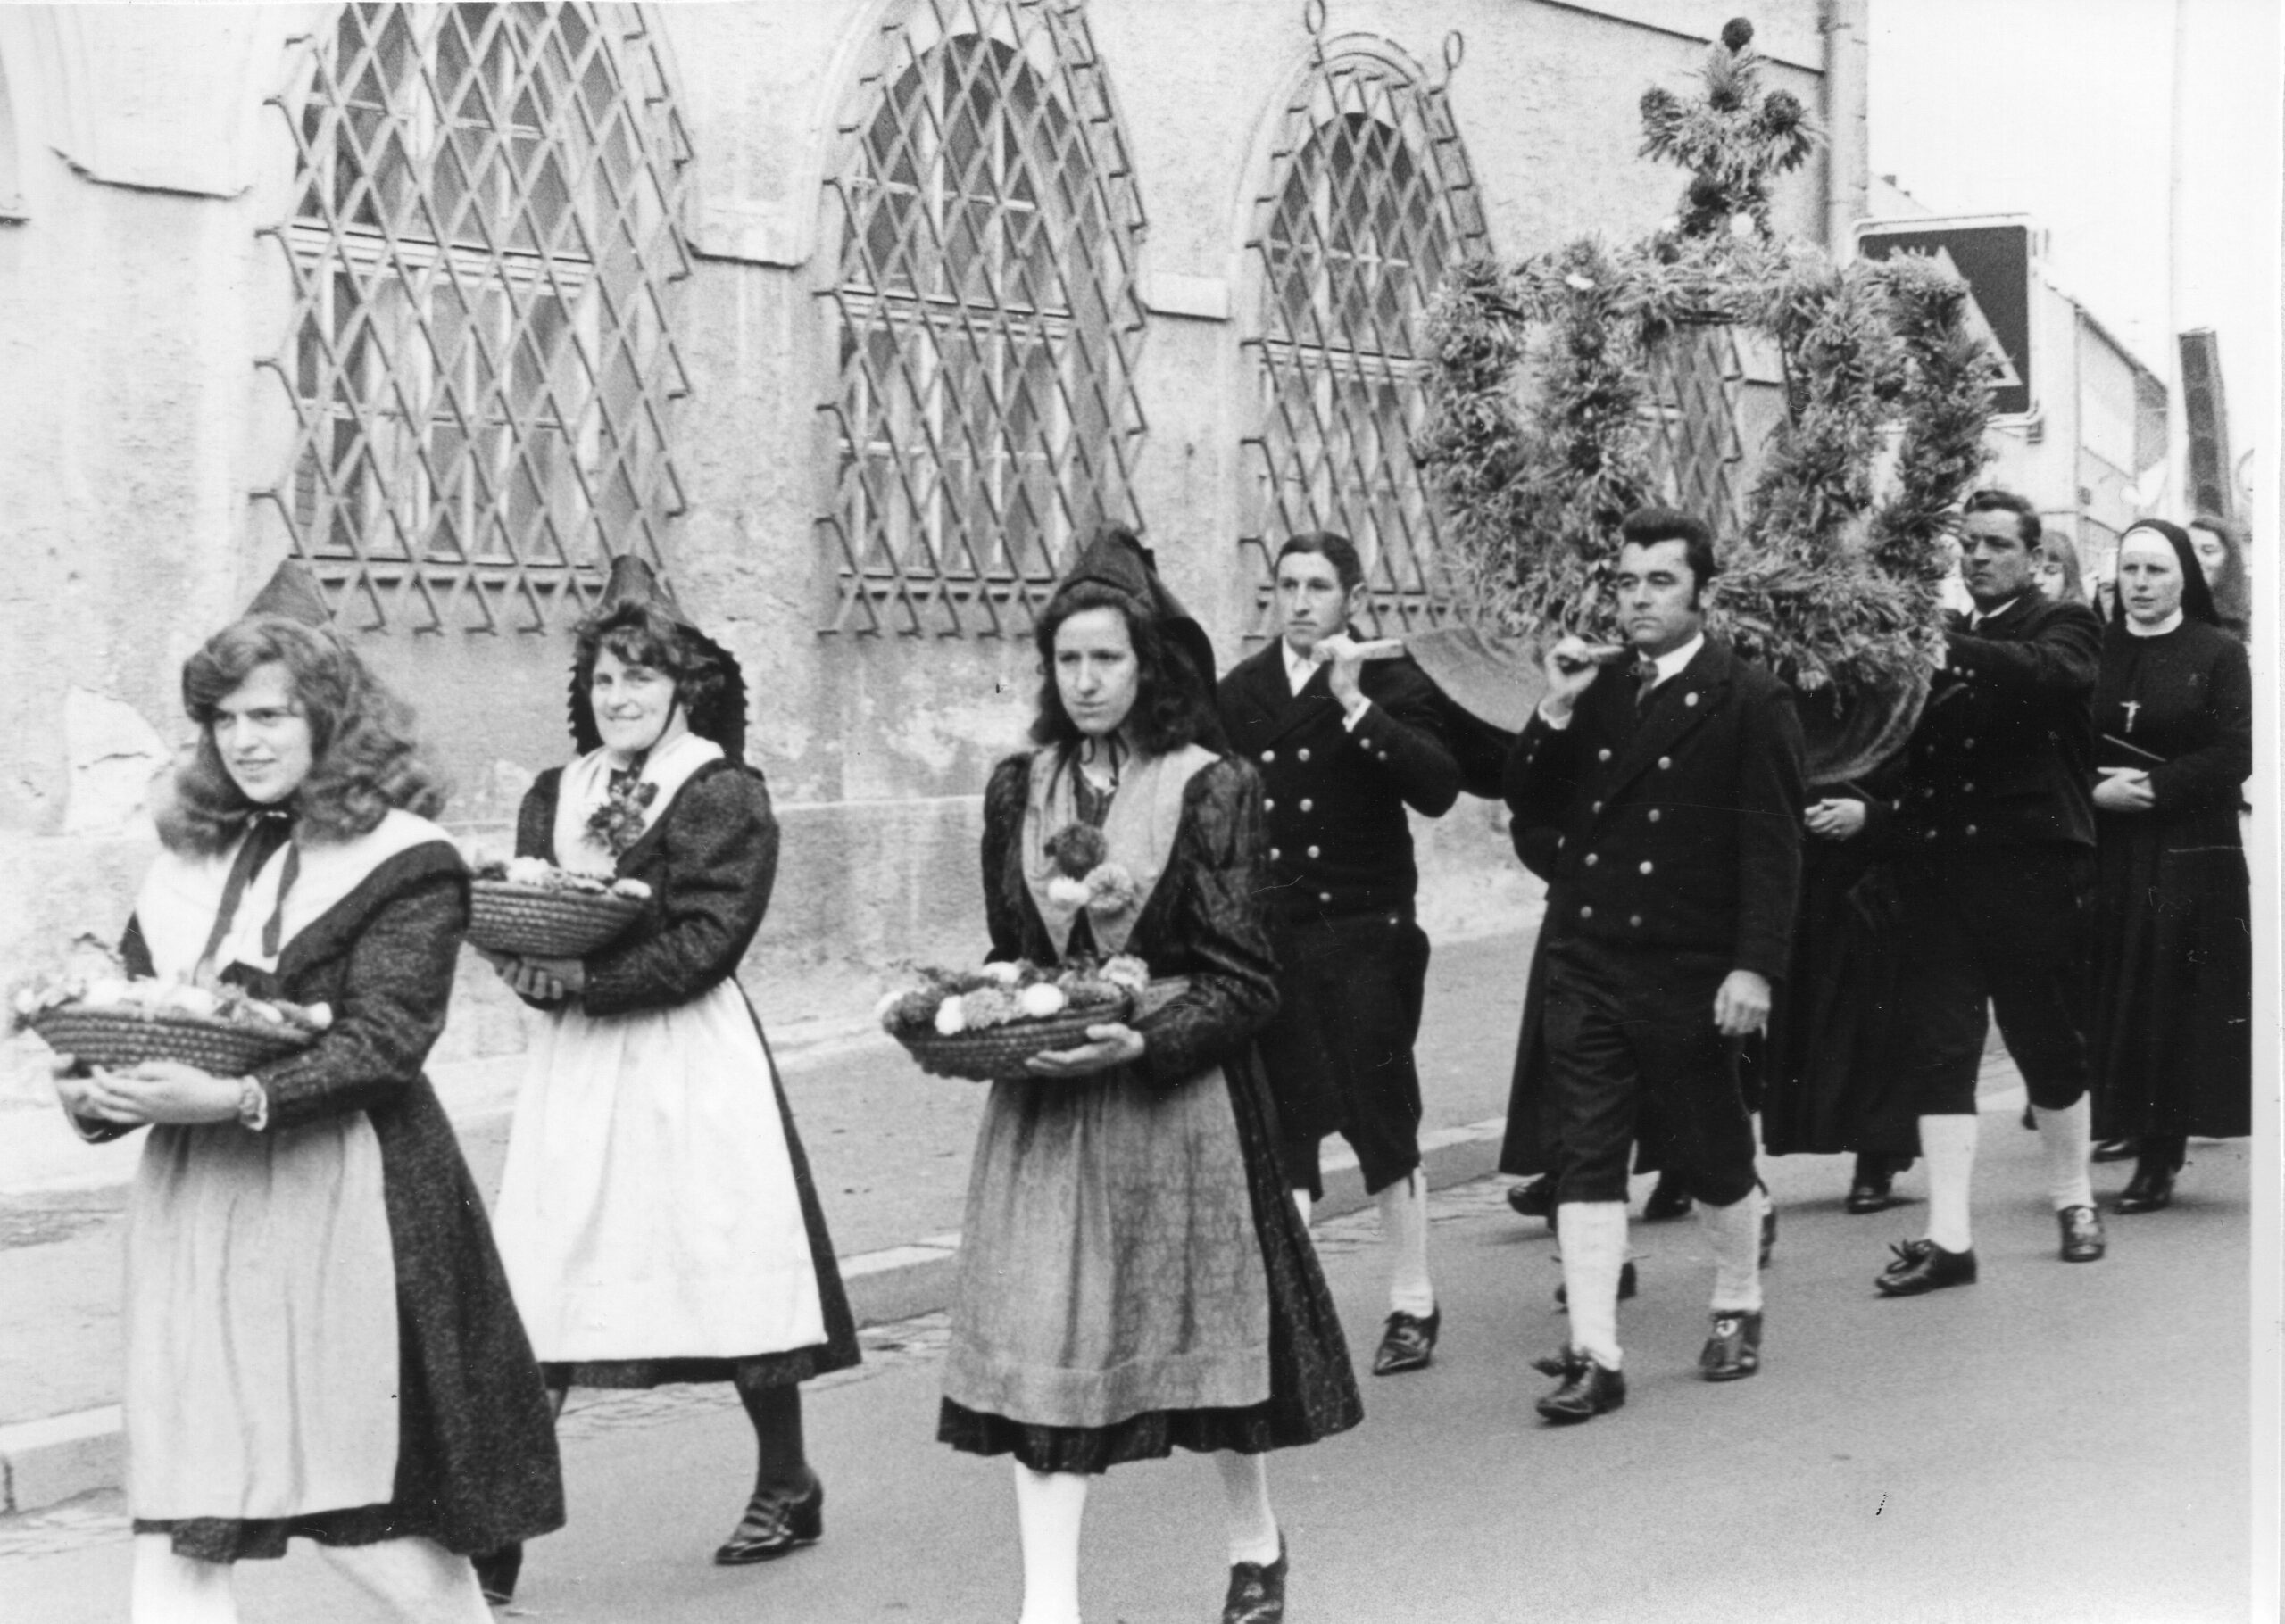 Erinnerungen an die Erntedankprozession aus dem Jahr 1971: Die Mitglieder des Stiftländer Heimatvereins haben damals noch Erntekrone getragen, die Frauen in ihrer besonderen Festtracht Körbe mit den Erntegaben. 